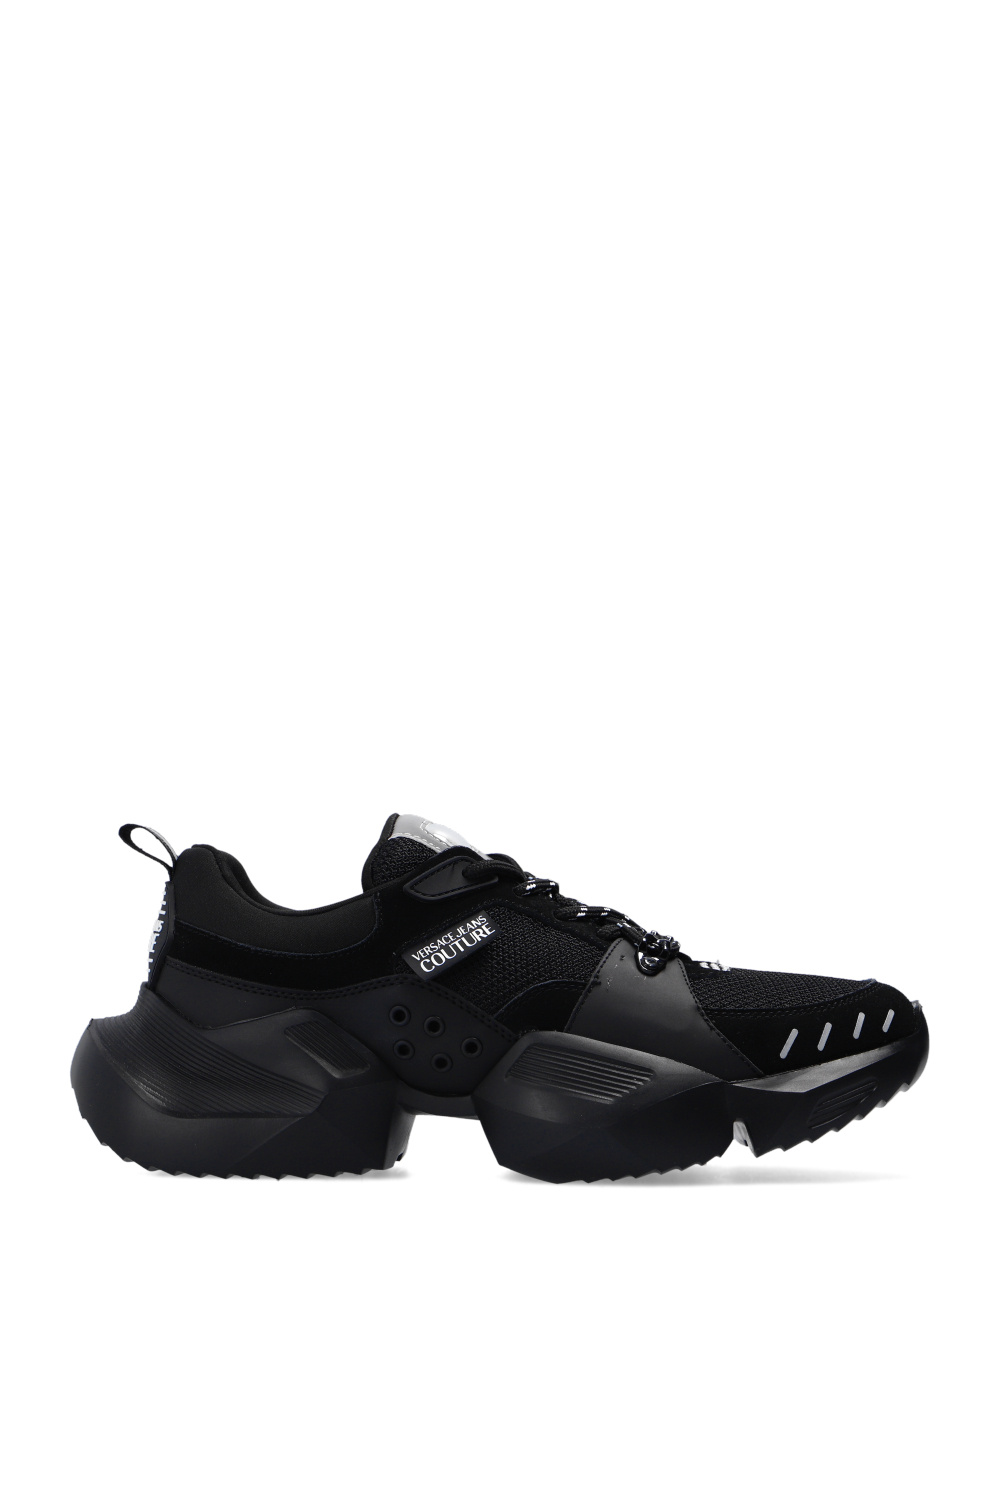 Sneakers MB-7006-07 Blue ‘Gravity’ sneakers